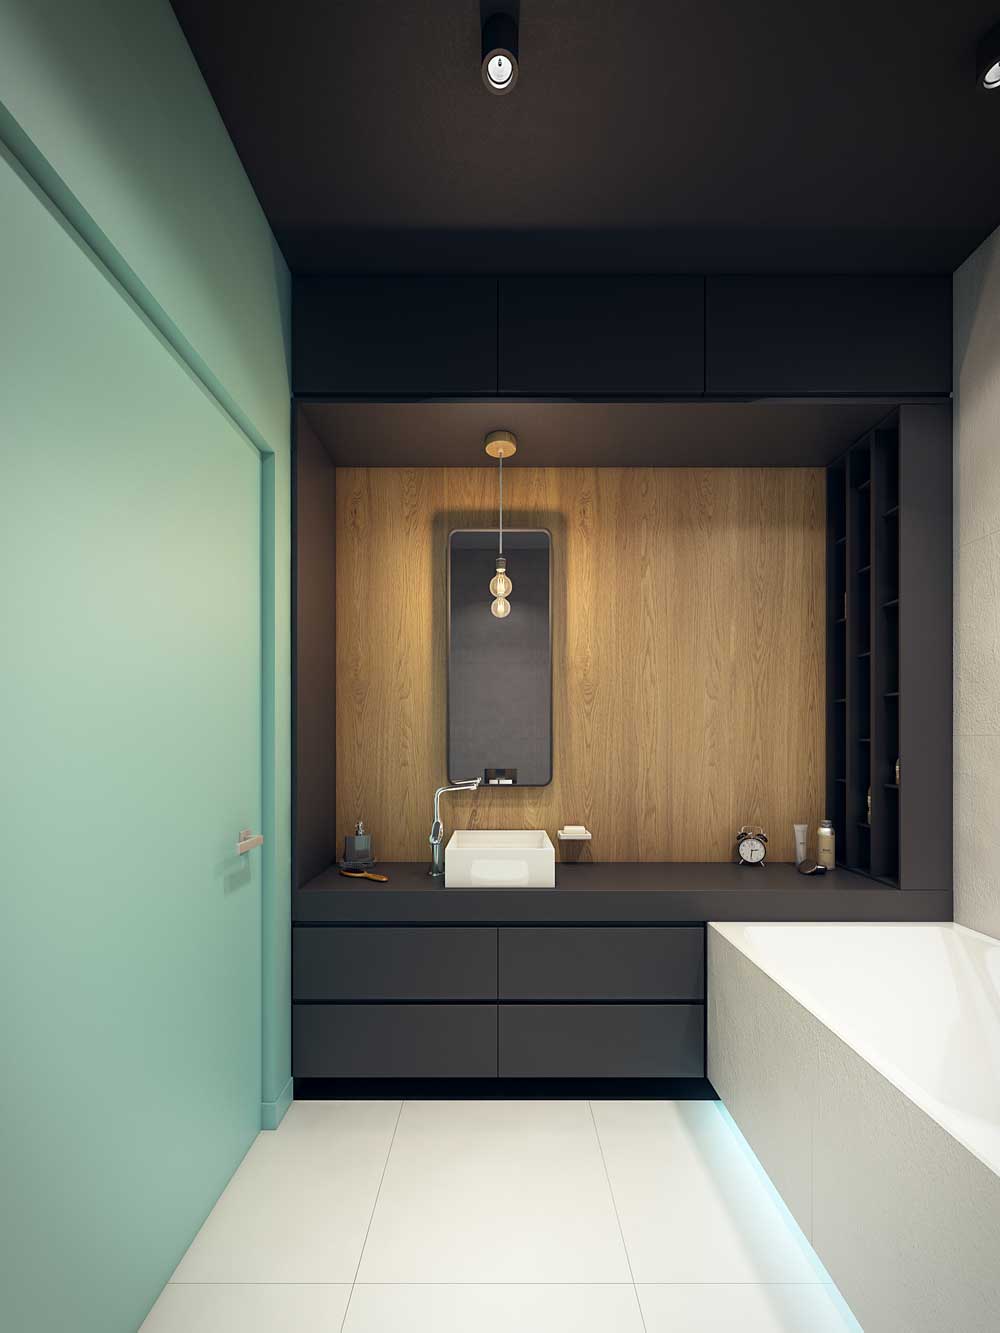 تصميم الحمام 6 متر مربع لون التقسيم